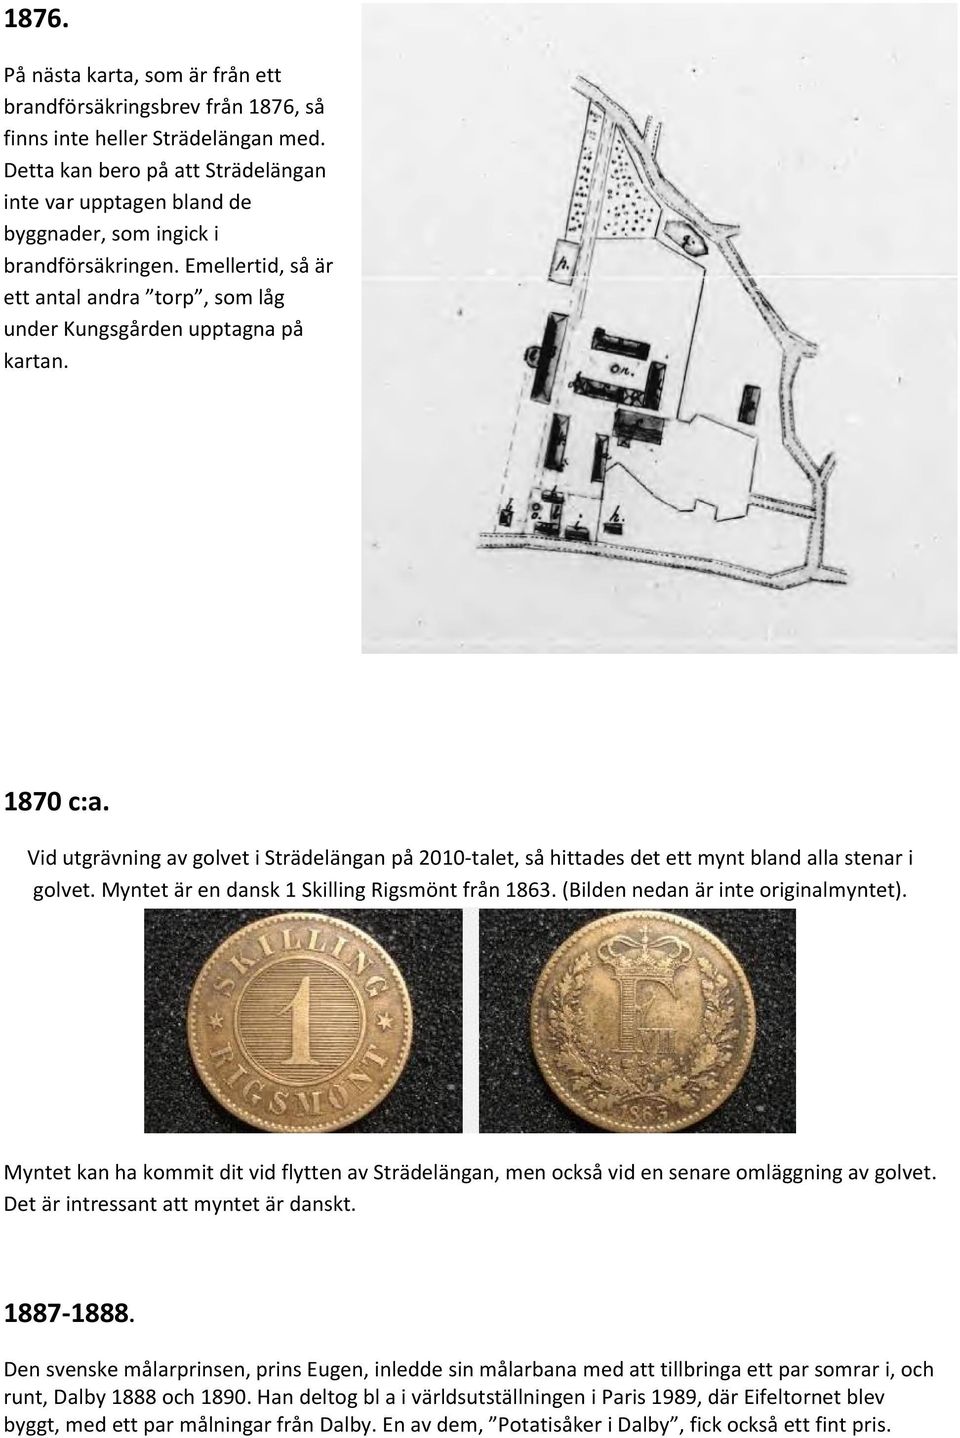 Vid utgrävning av golvet i Strädelängan på 2010-talet, så hittades det ett mynt bland alla stenar i golvet. Myntet är en dansk 1 Skilling Rigsmönt från 1863. (Bilden nedan är inte originalmyntet).